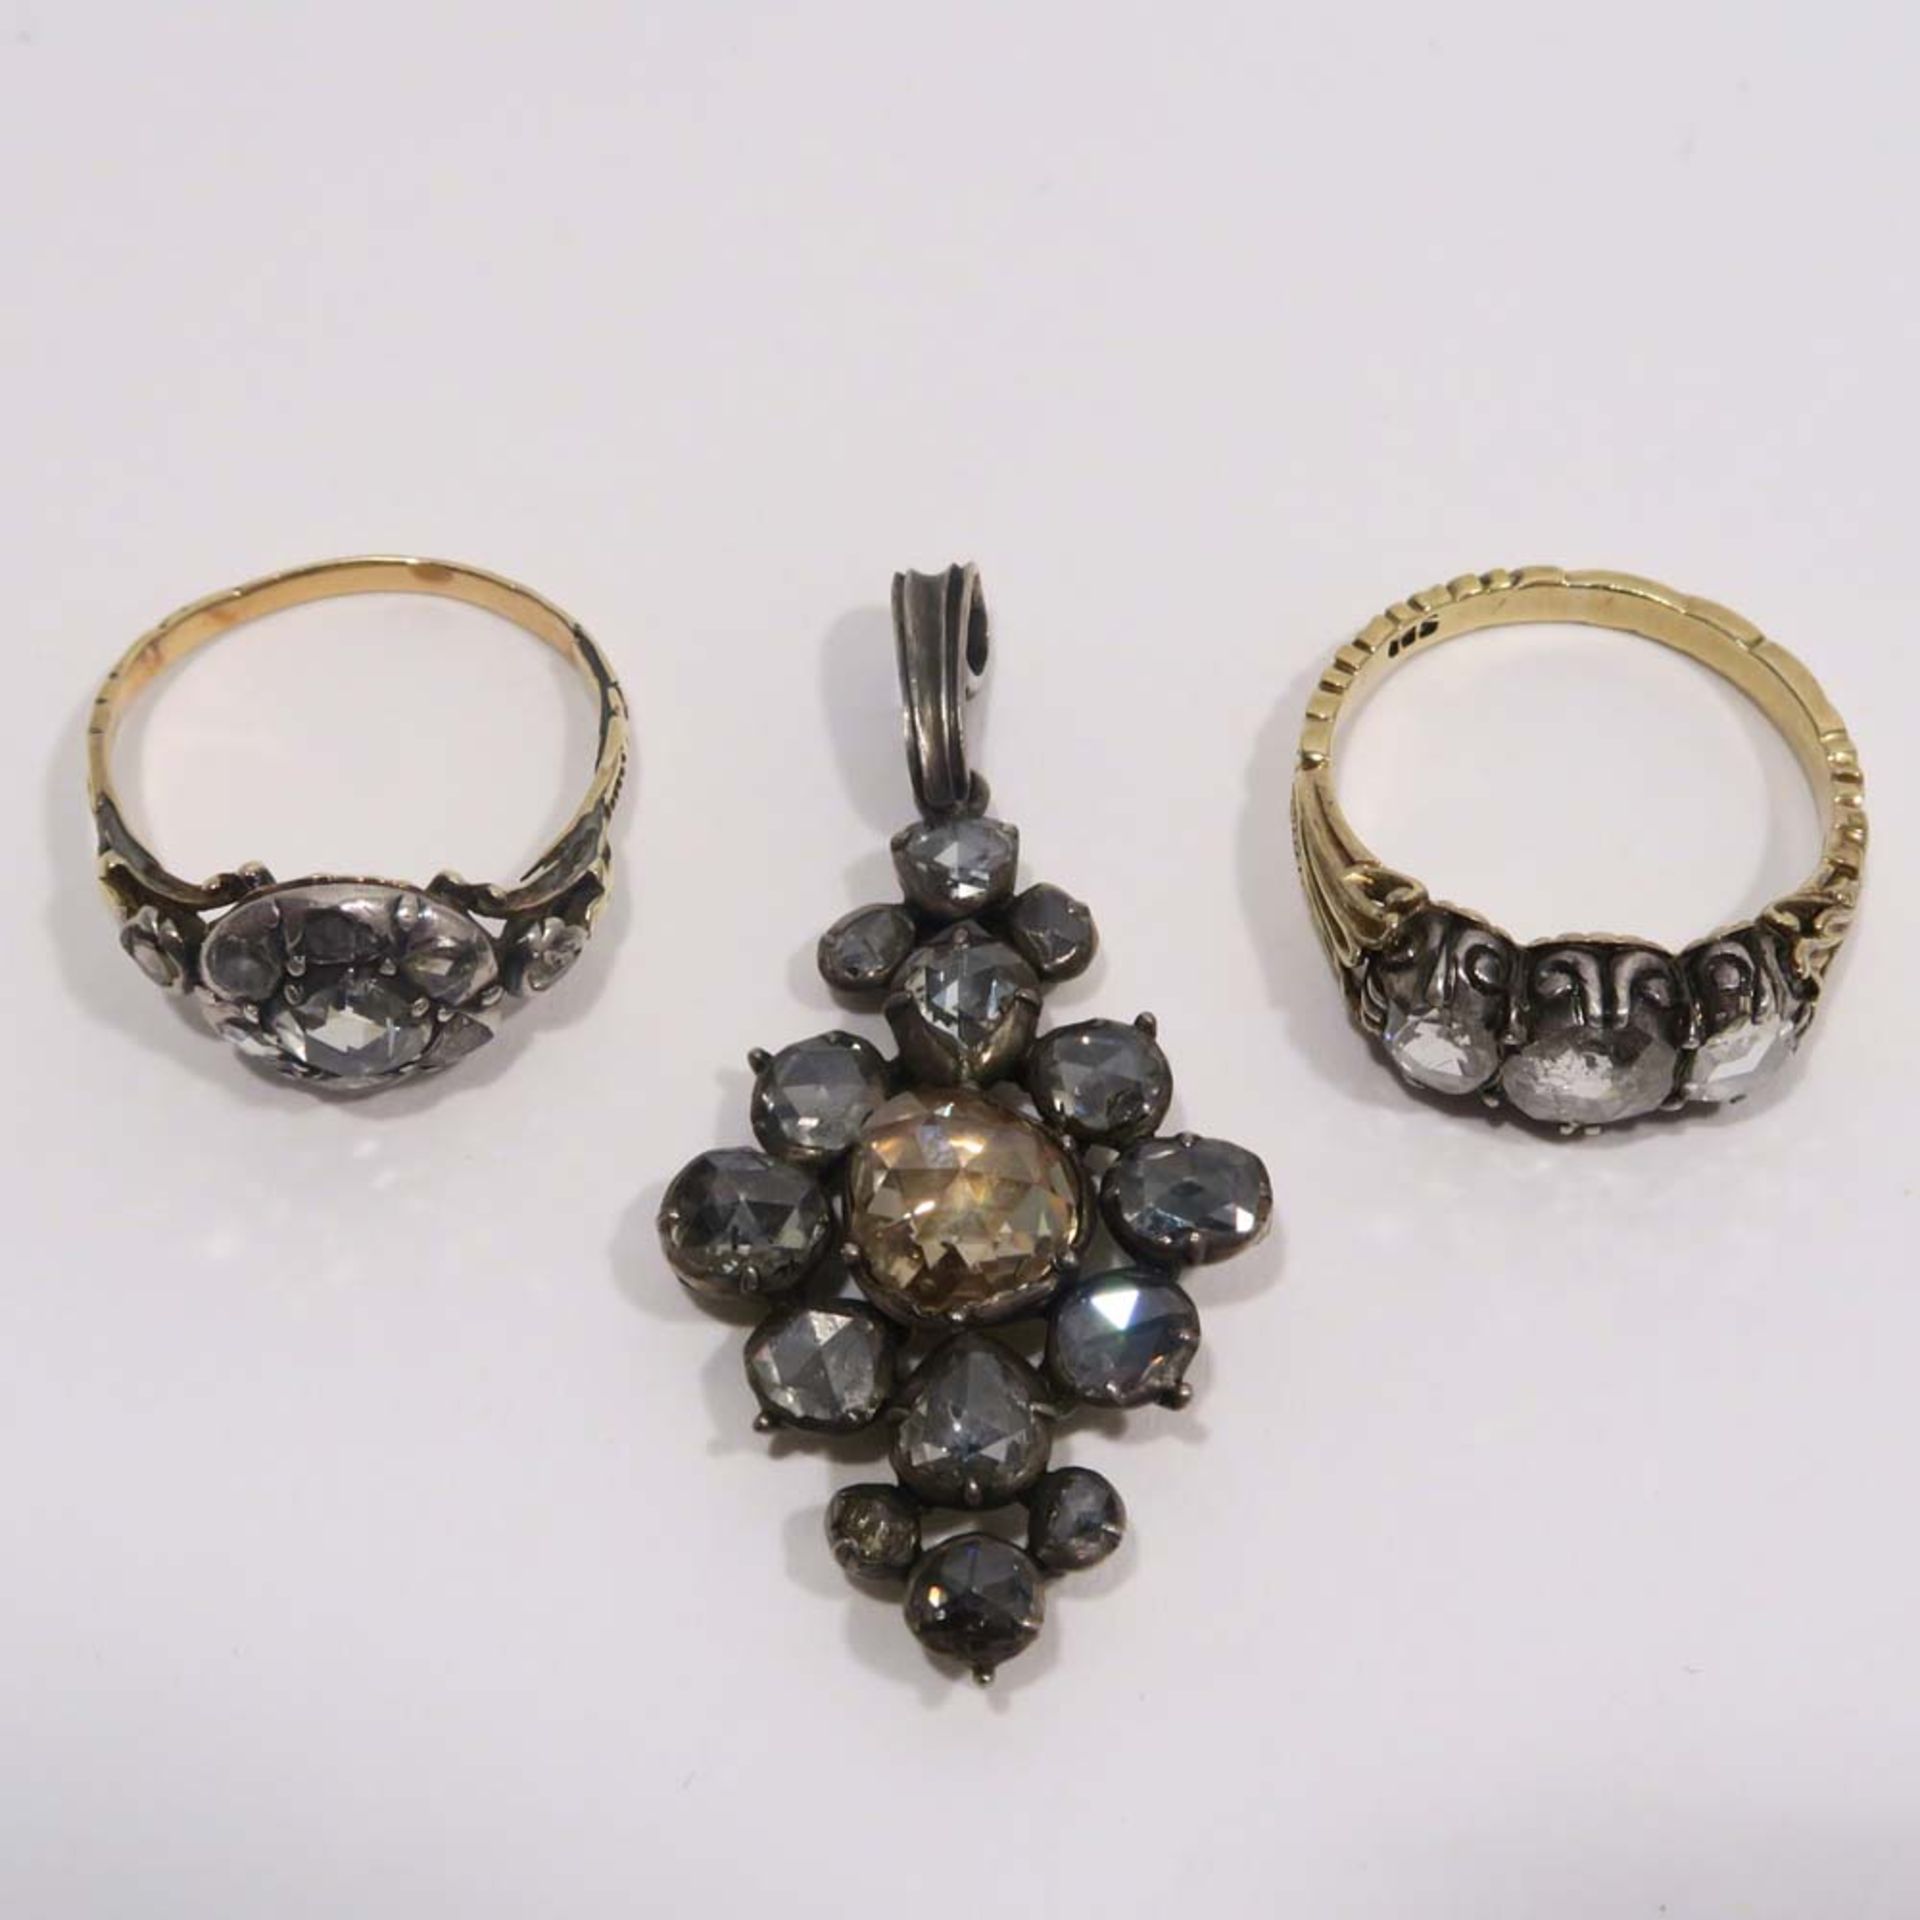 Zwei Ringe und ein Anhänger14 K GG, tlw. Marke (585), bzw. Silber. Mit Diamantrosen besetzt.